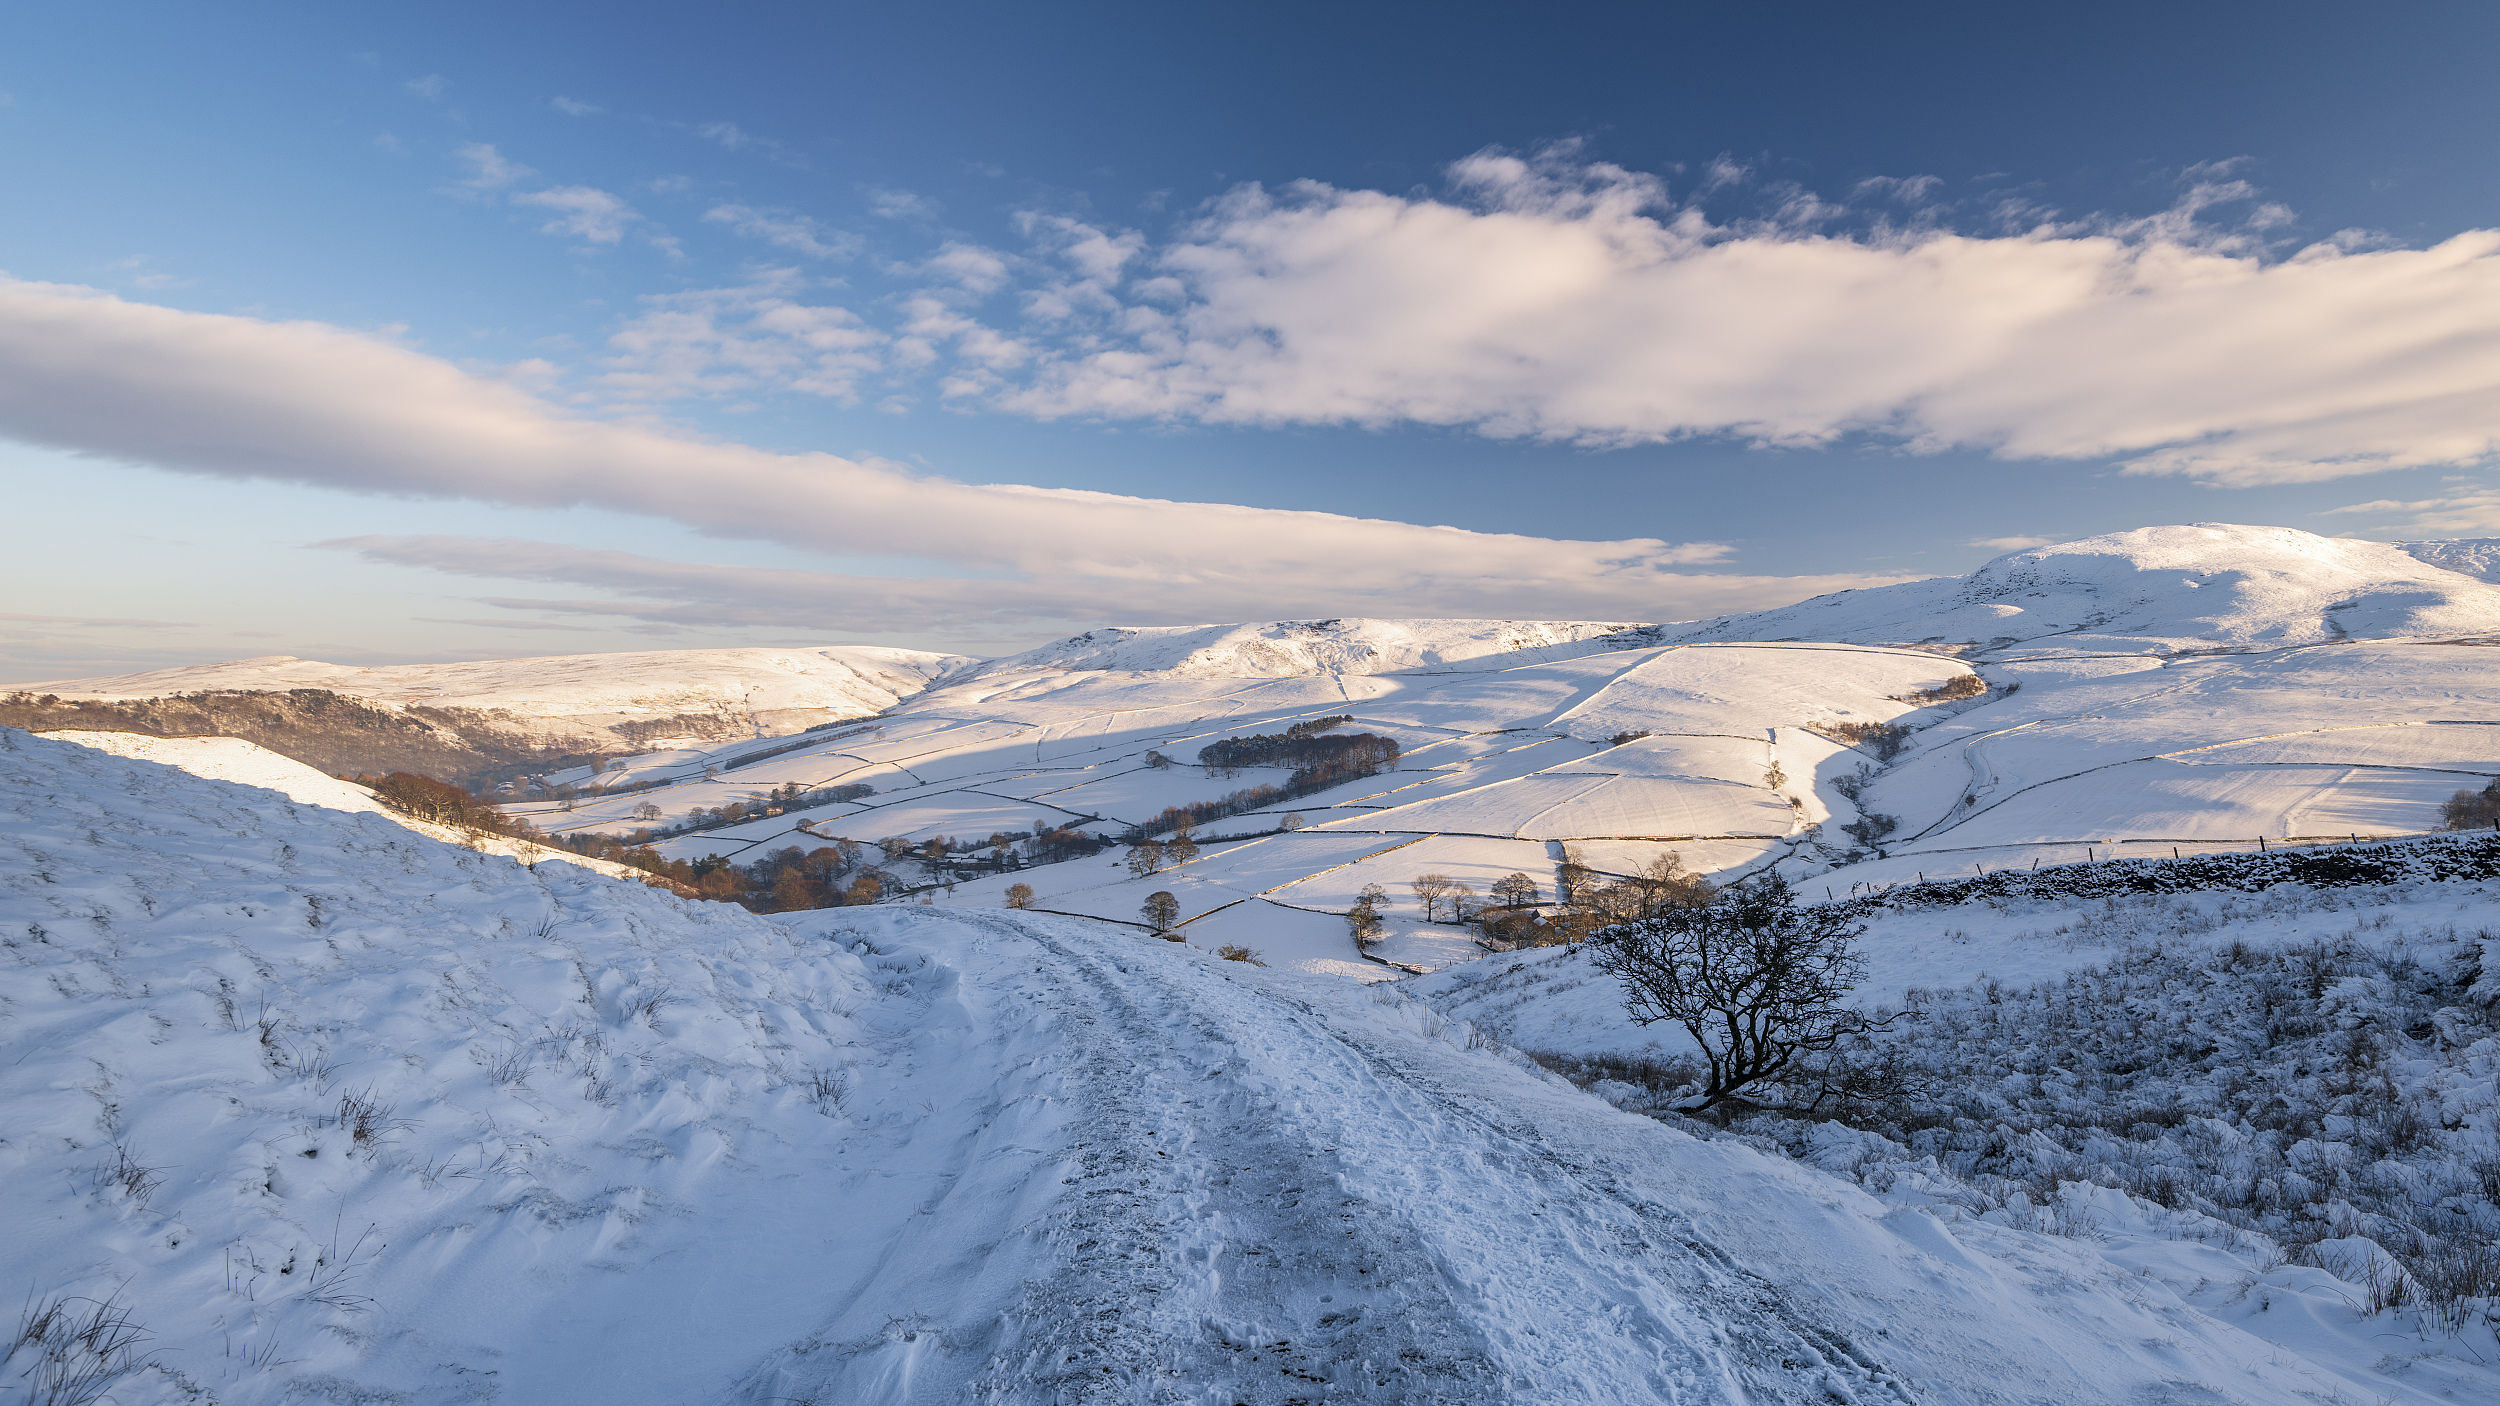 探访冬季日出时分的英国峰区 壮美景象宛若奇